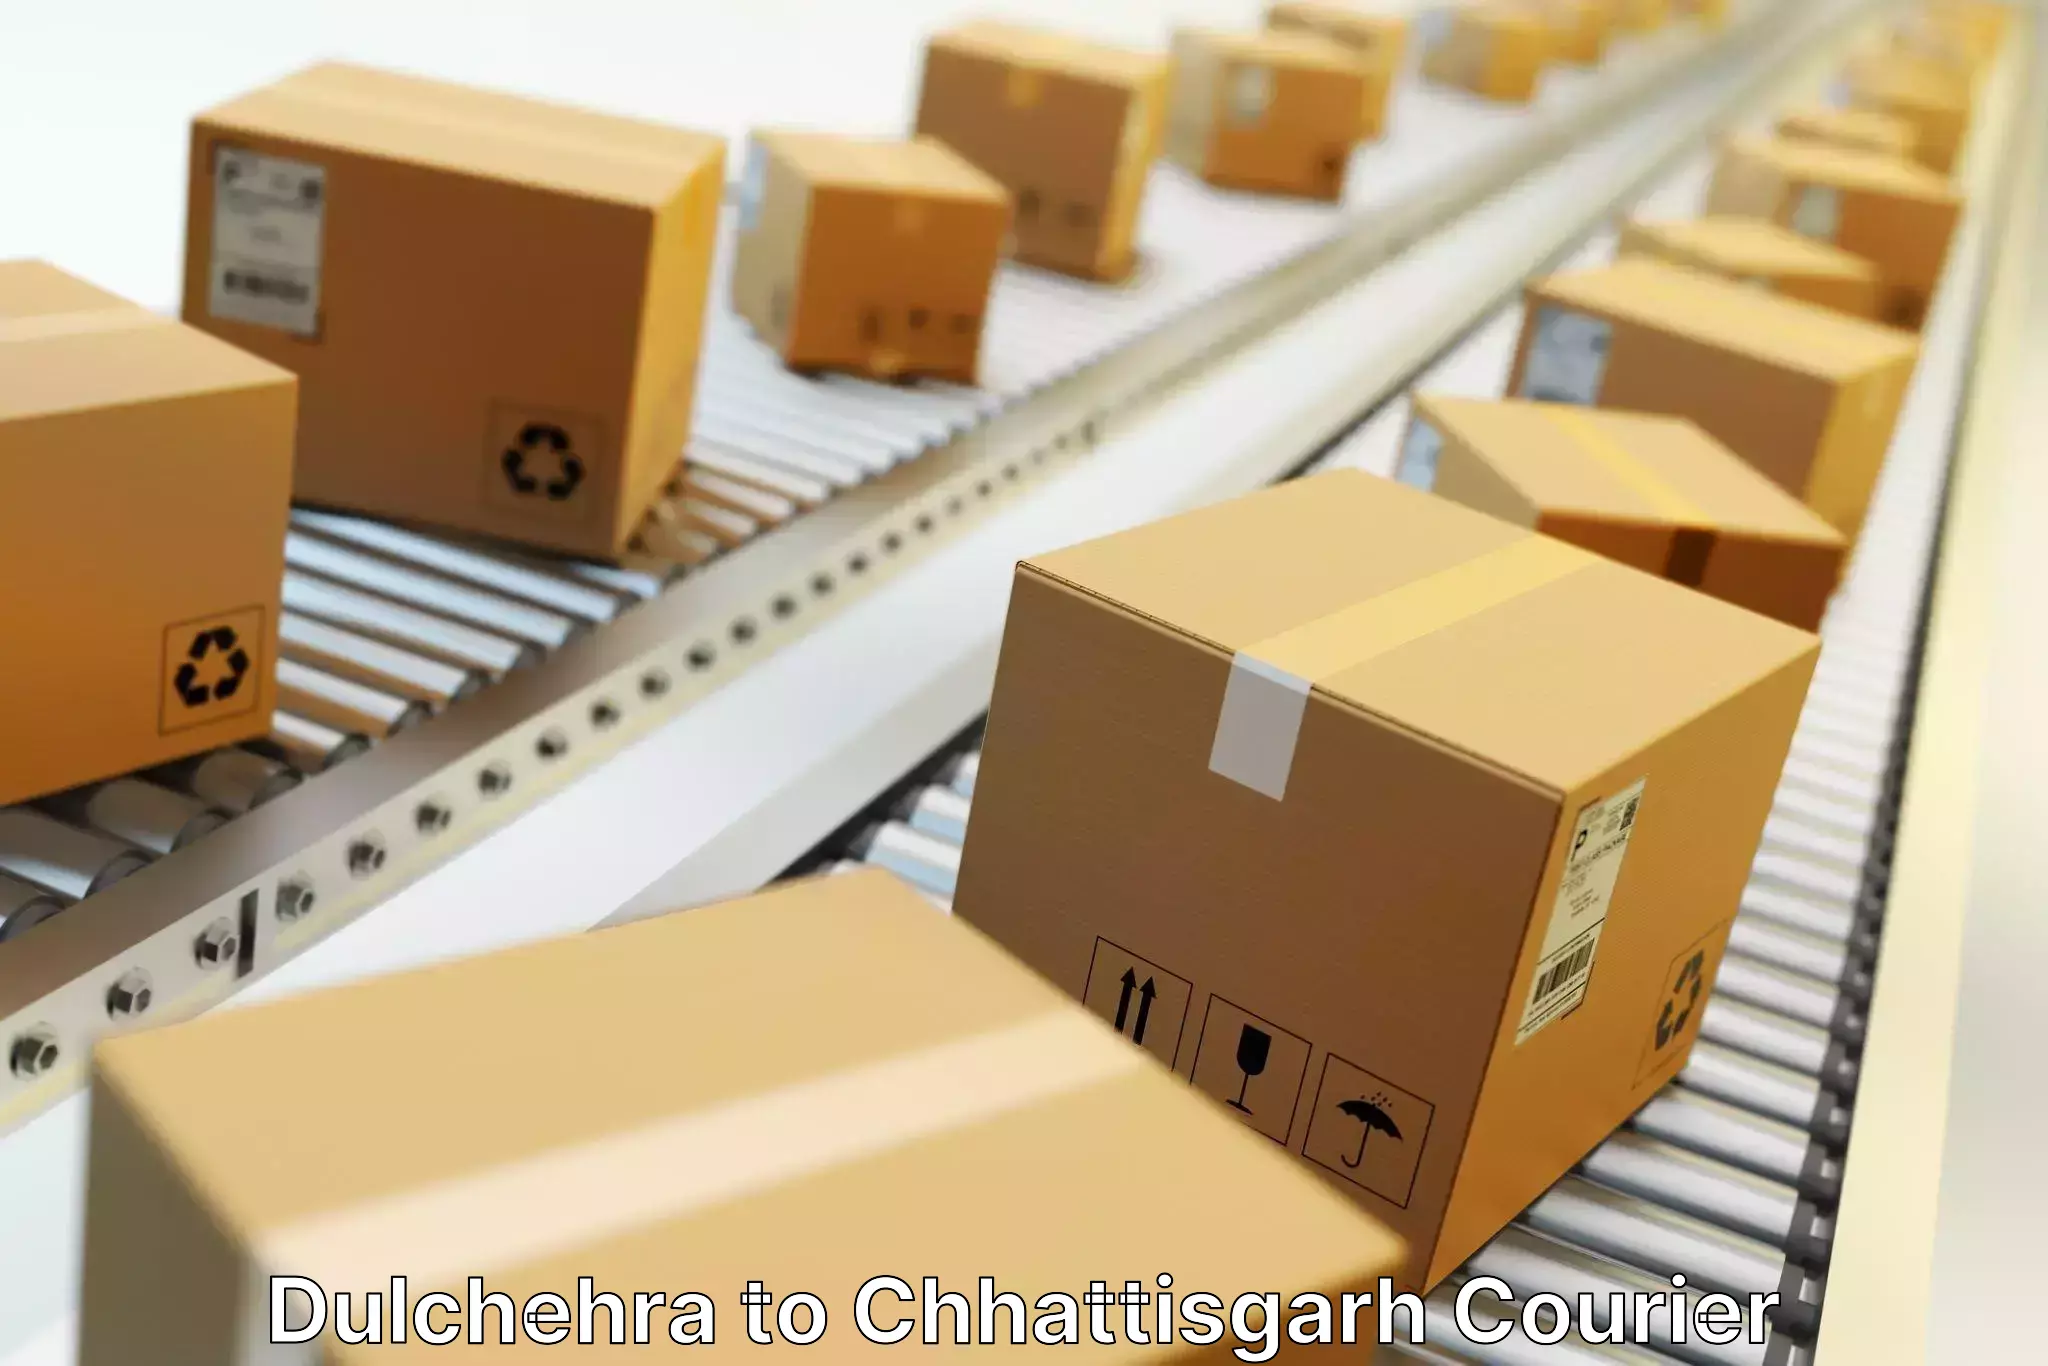 Efficient freight service Dulchehra to Korea Chhattisgarh